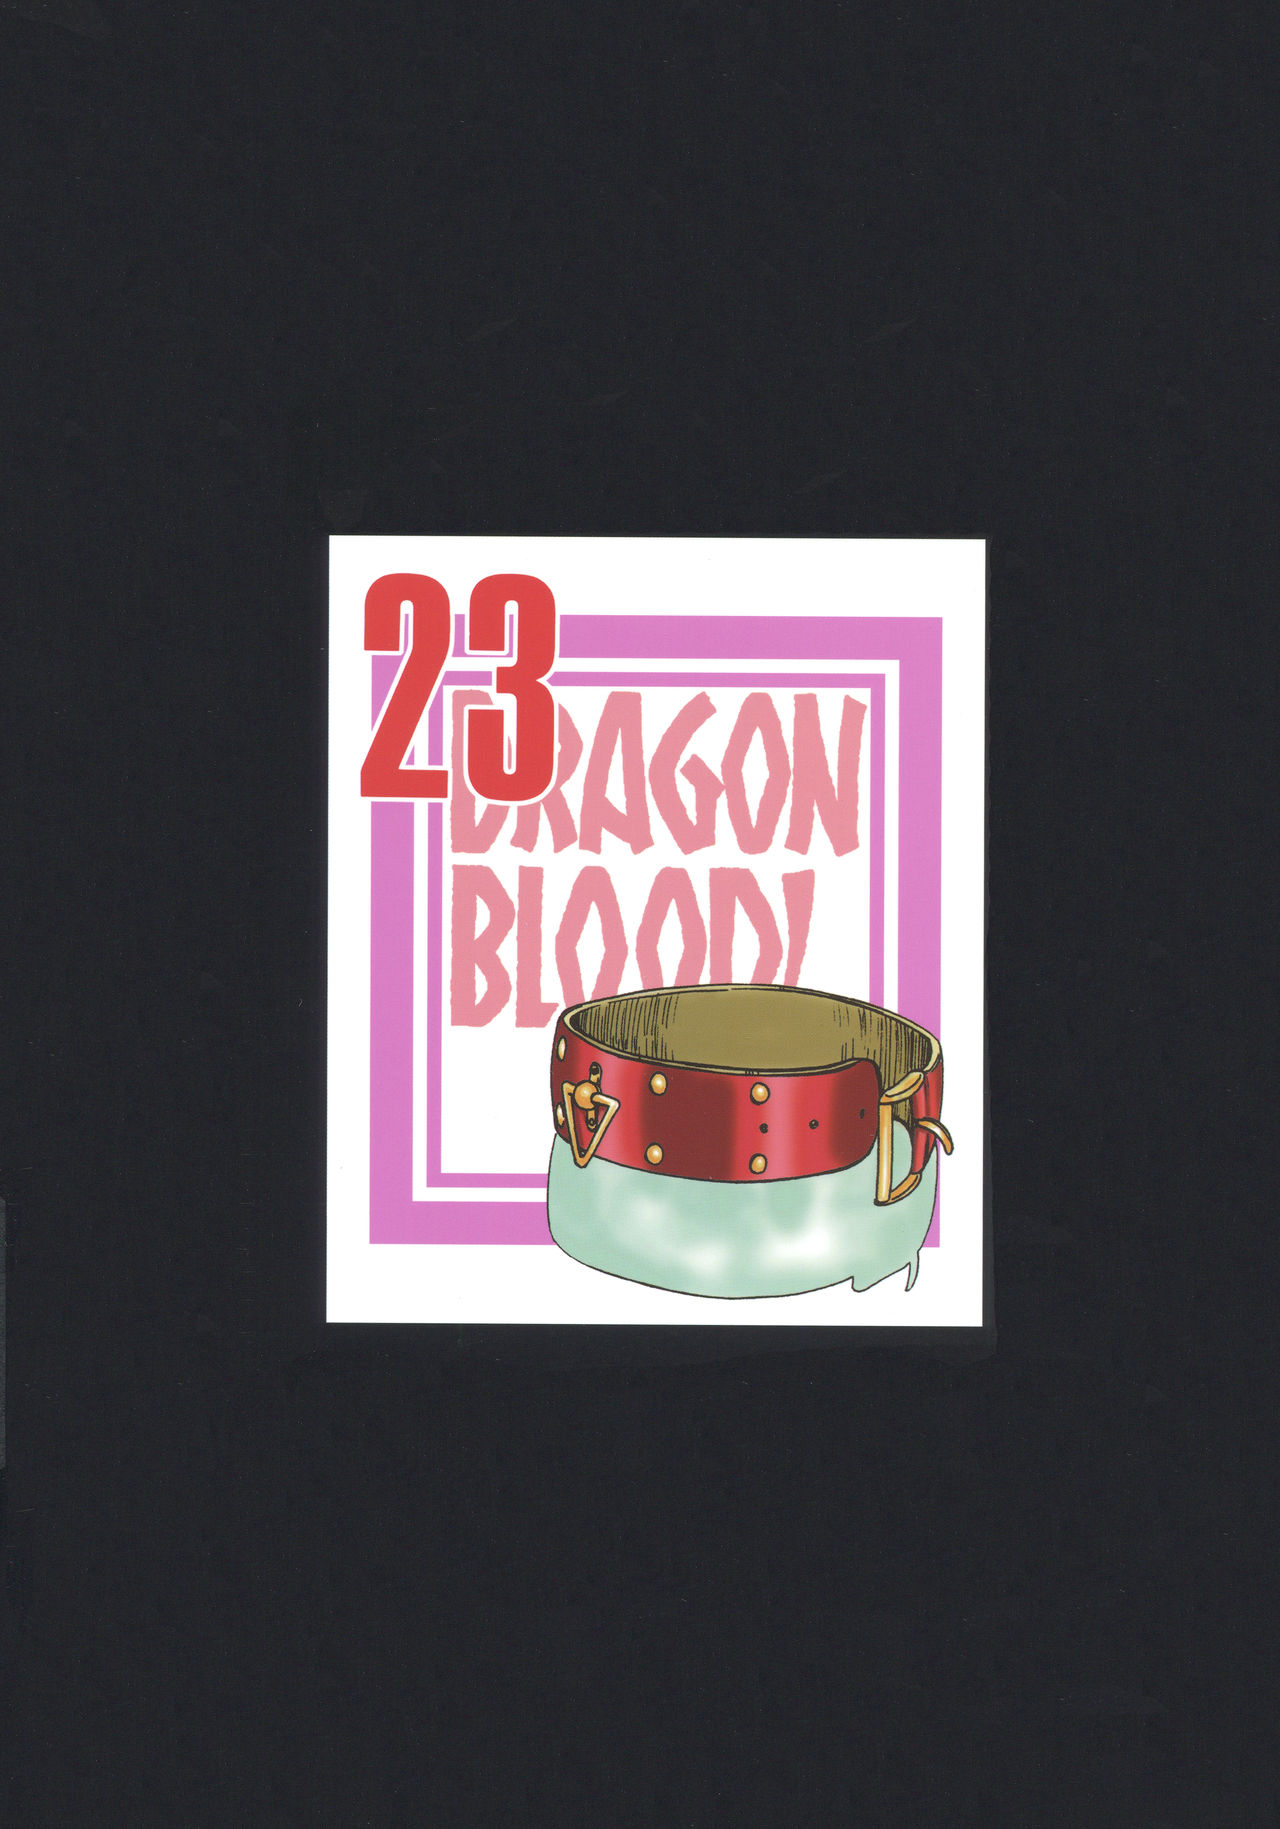 (C93) [LTM. (たいらはじめ)] ニセDRAGON・BLOOD! 23.